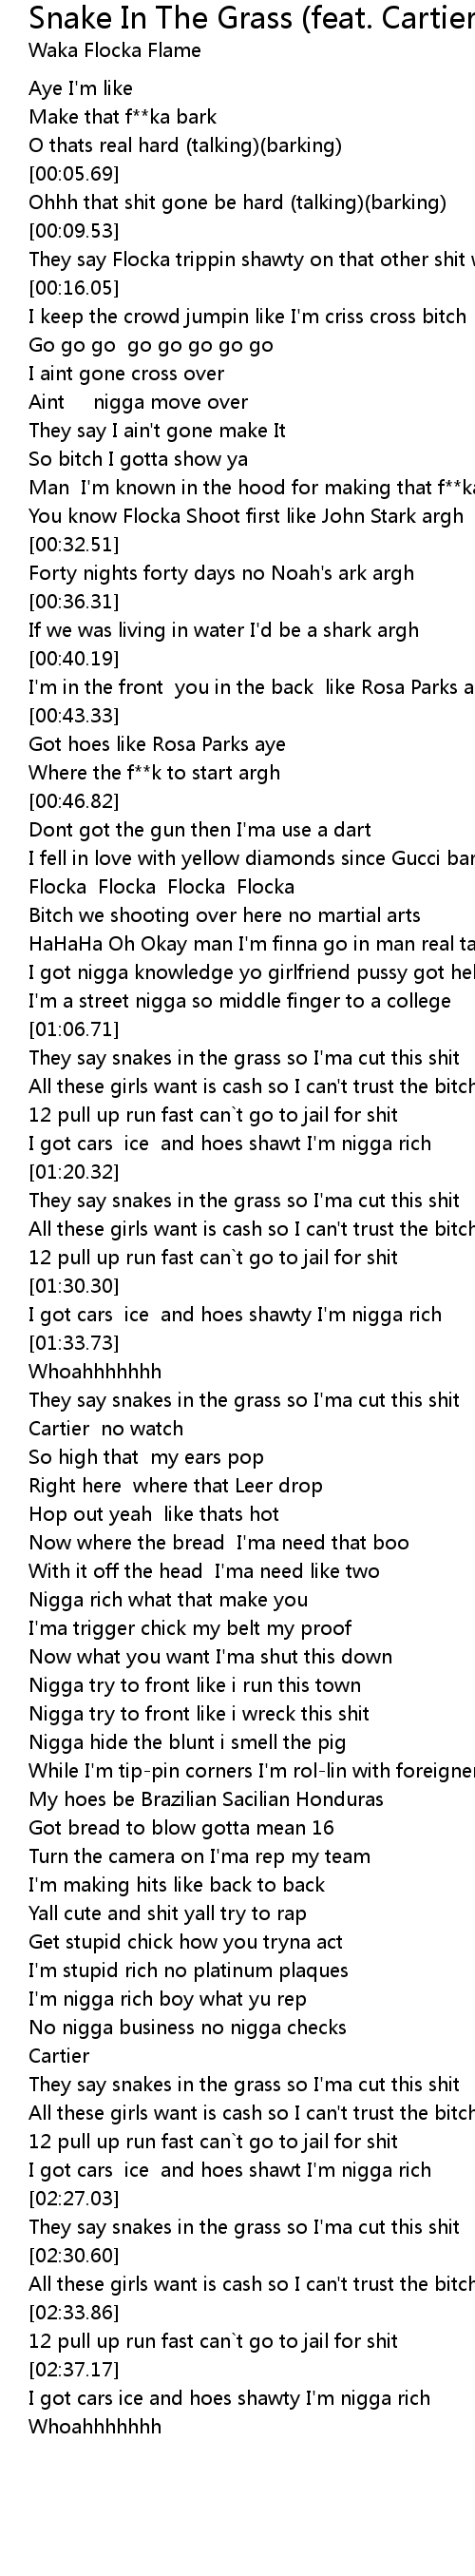 cartier rap lyrics